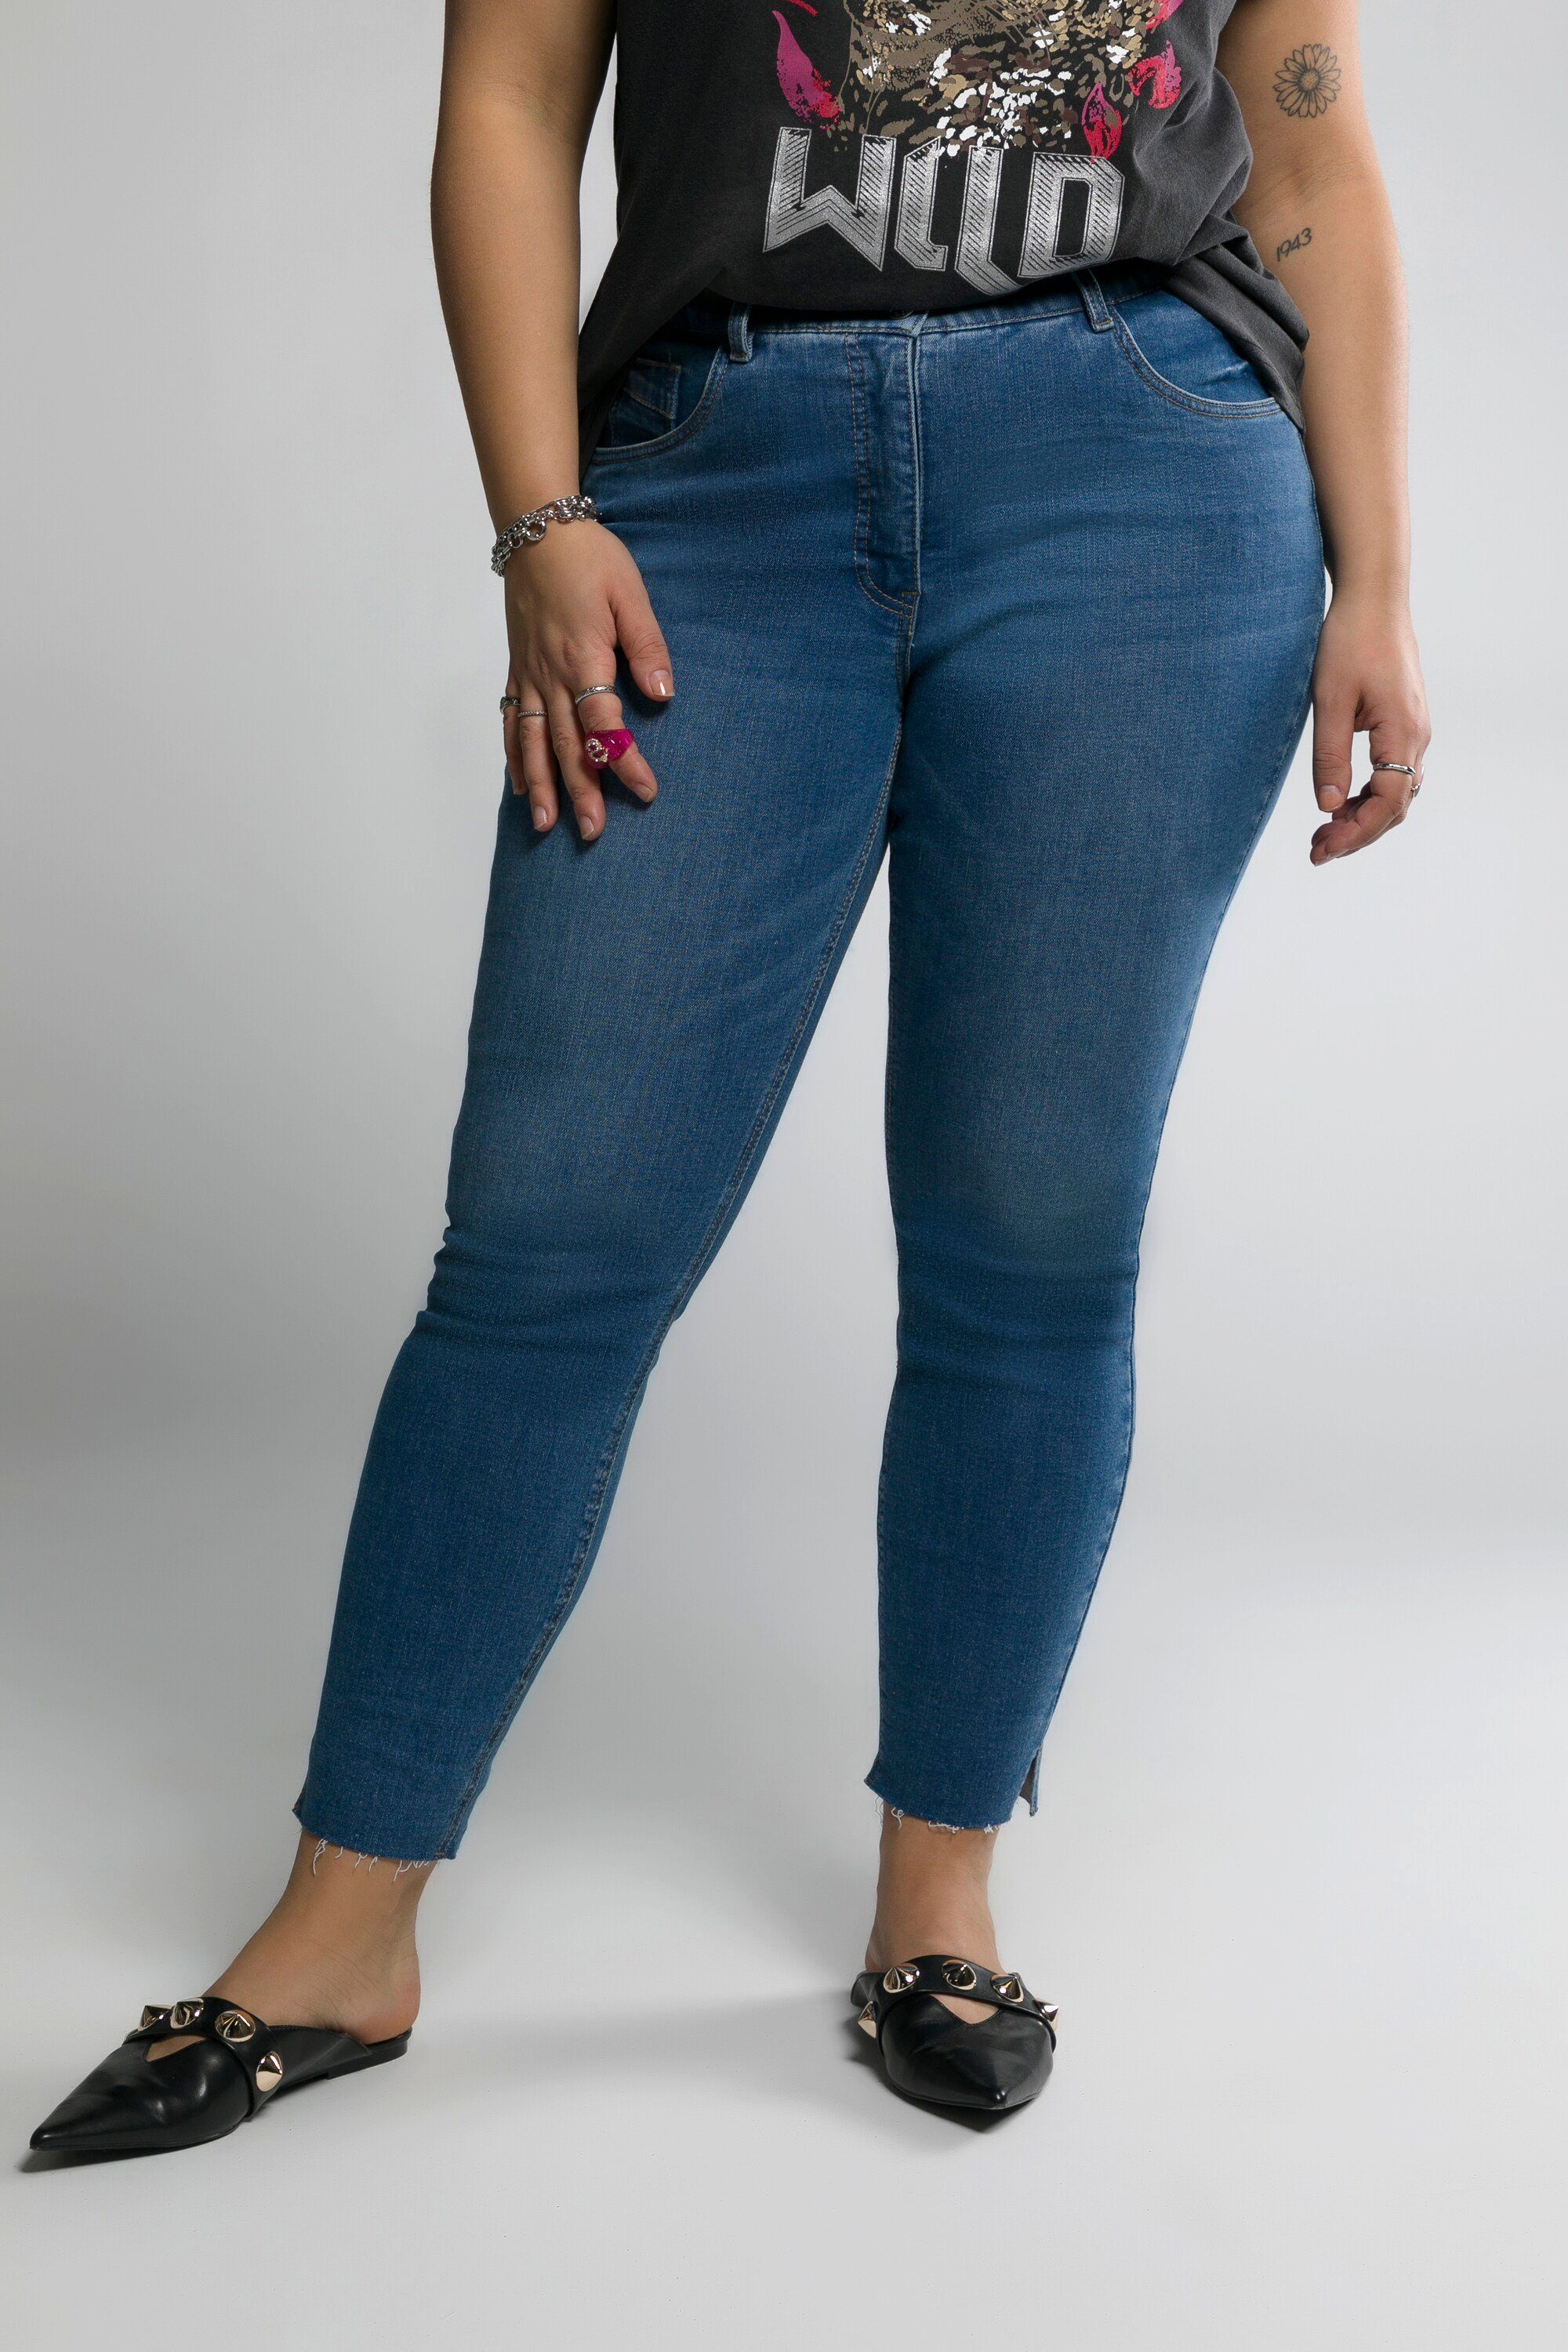 Studio Untold Schlupfhose Skinny Jeans Fransensaum 5-Pocket denim blue Schlitz schmal